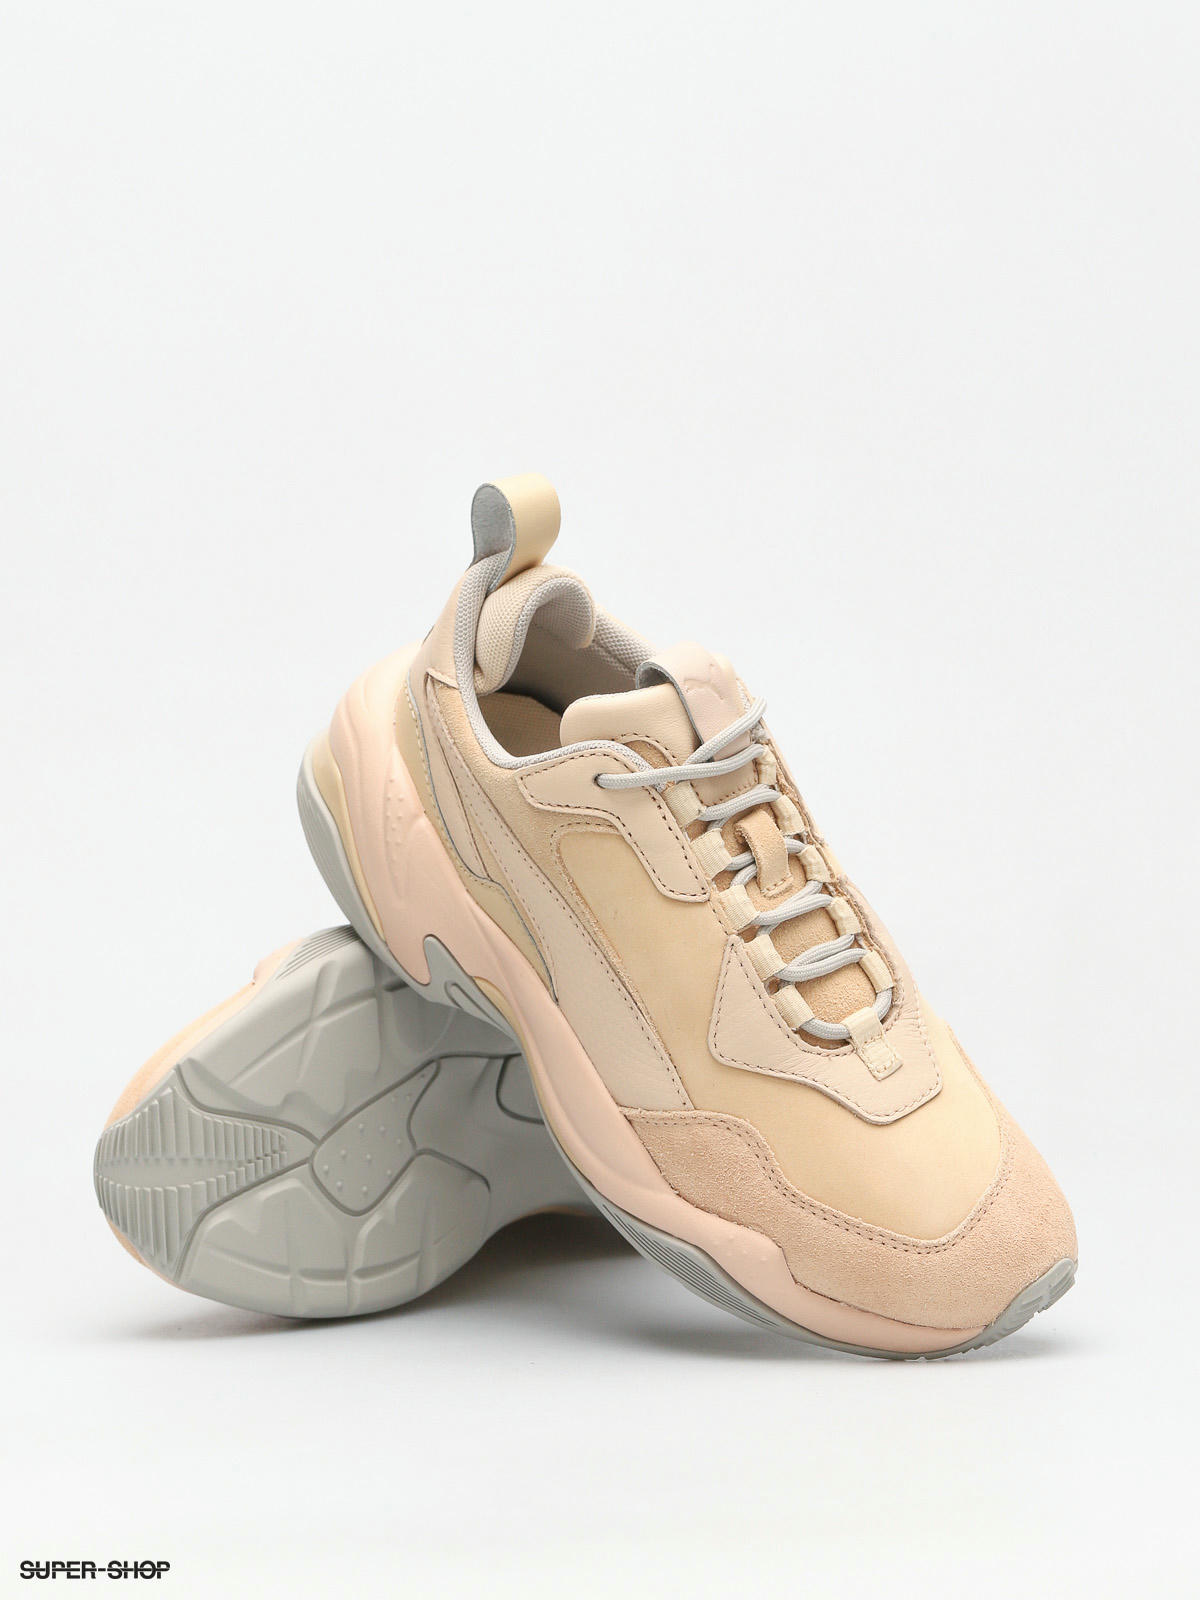 rekenkundig kleur verklaren Puma Shoes Thunder Desert Wmn (natural vachetta cre)